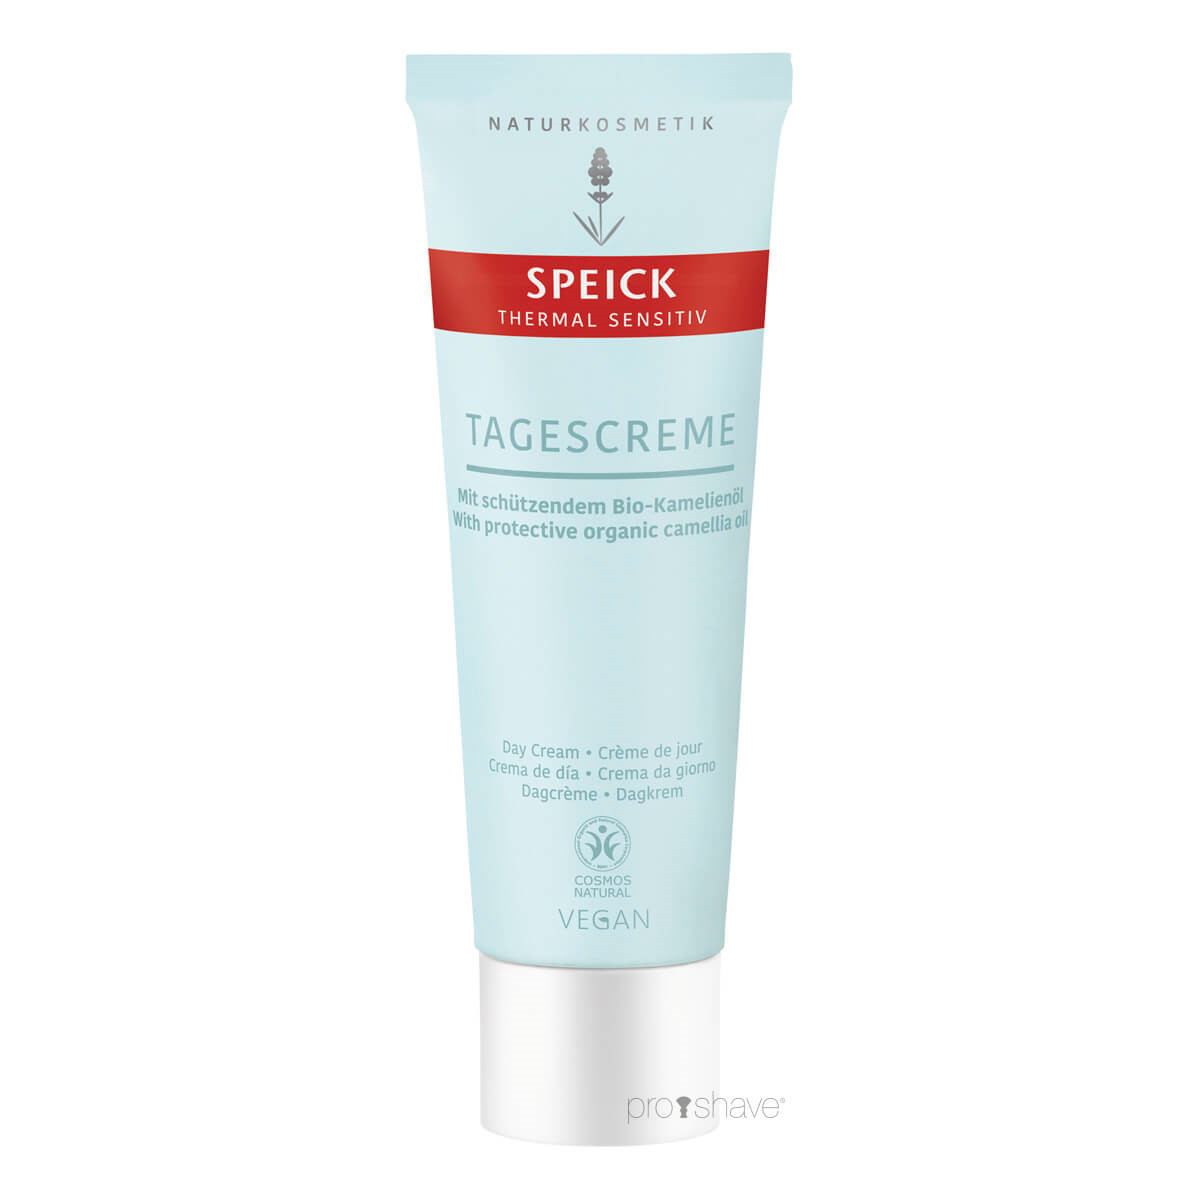 Billede af Speick Protecting Day Cream, Thermal Sensitiv, 50 ml.